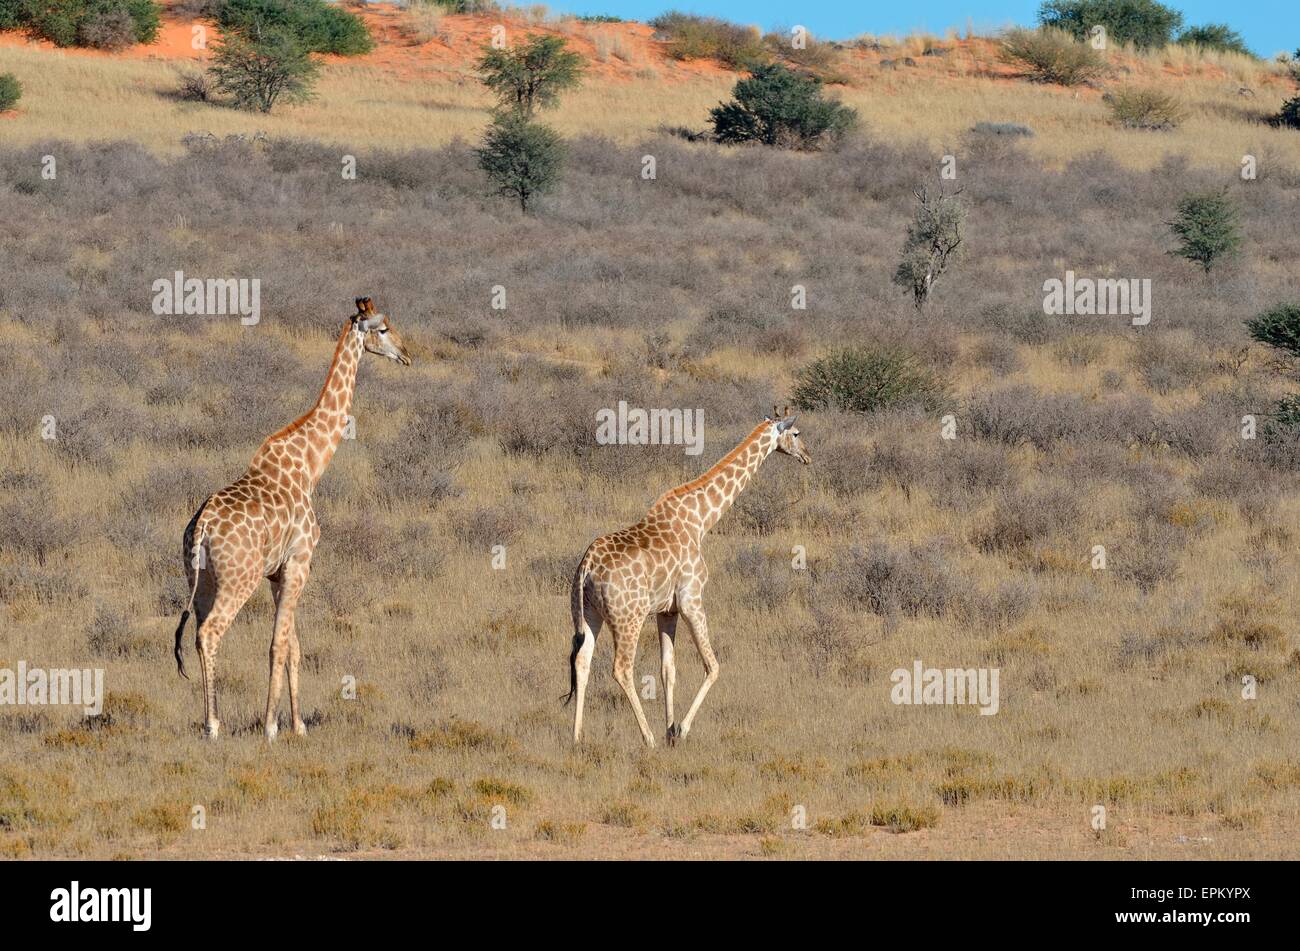 Jirafas (Giraffa camelopardalis), masculino y femenino, caminar en la hierba seca, el Parque Transfronterizo Kgalagadi, Sudáfrica, África Foto de stock